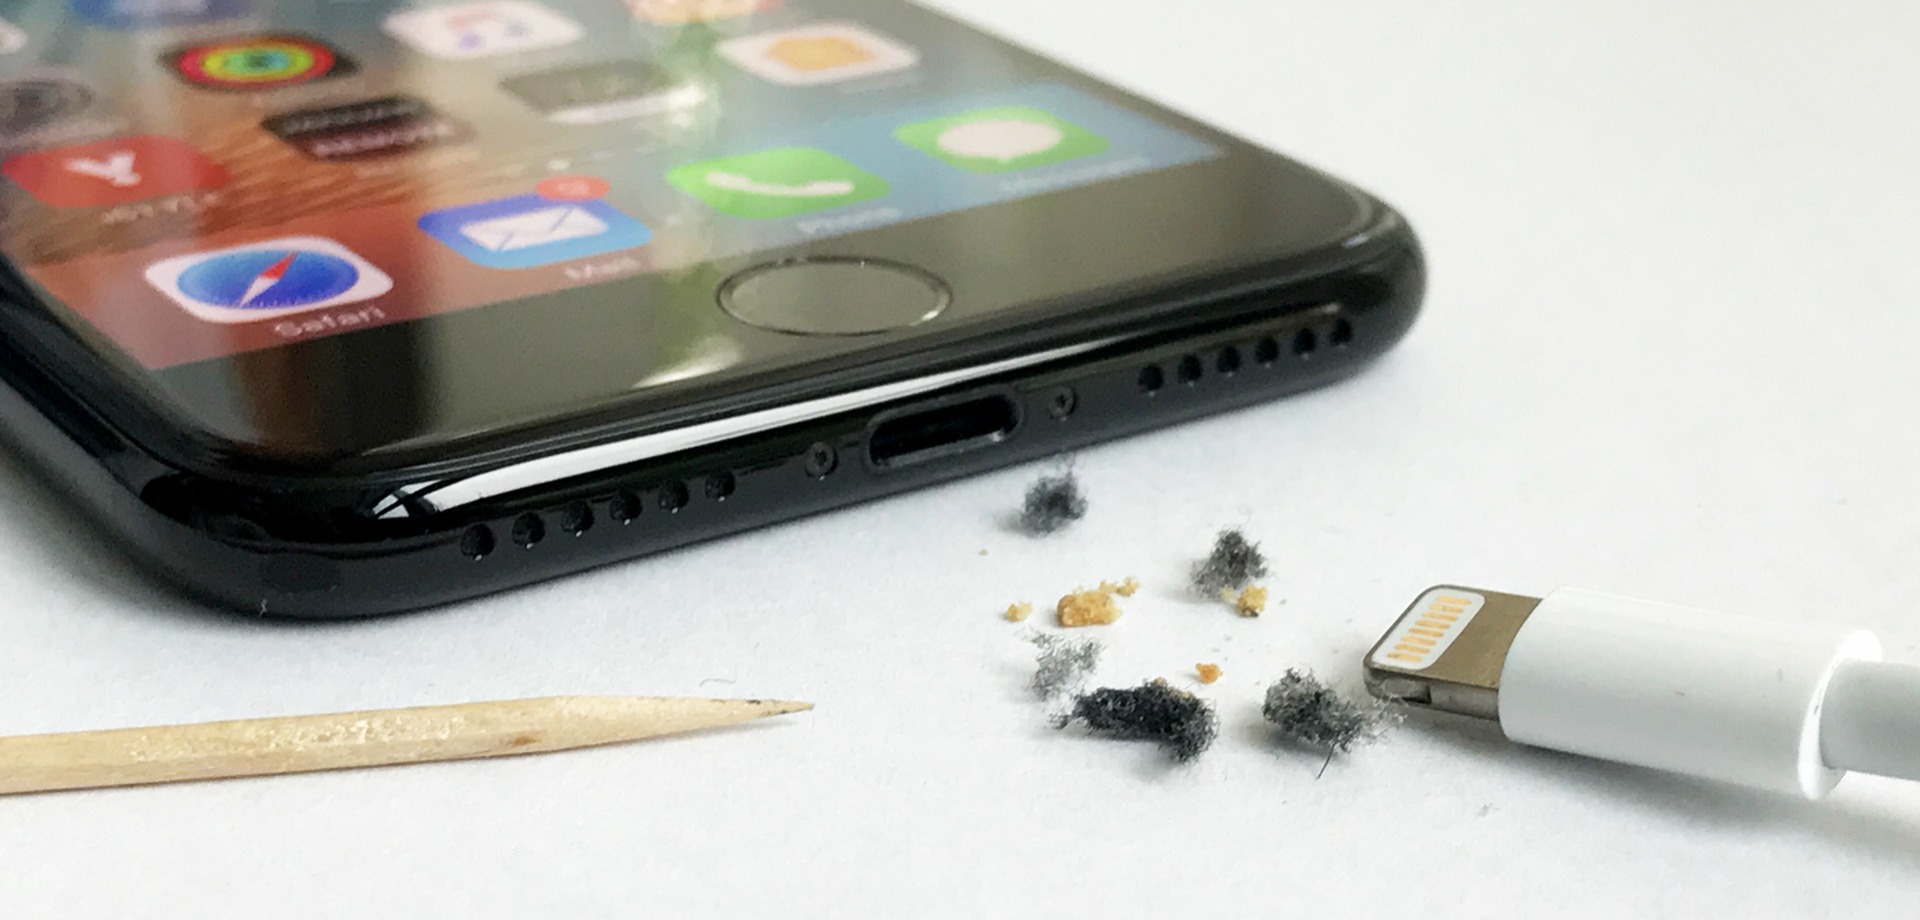 Jak vyčistit iPhone nabíjení?